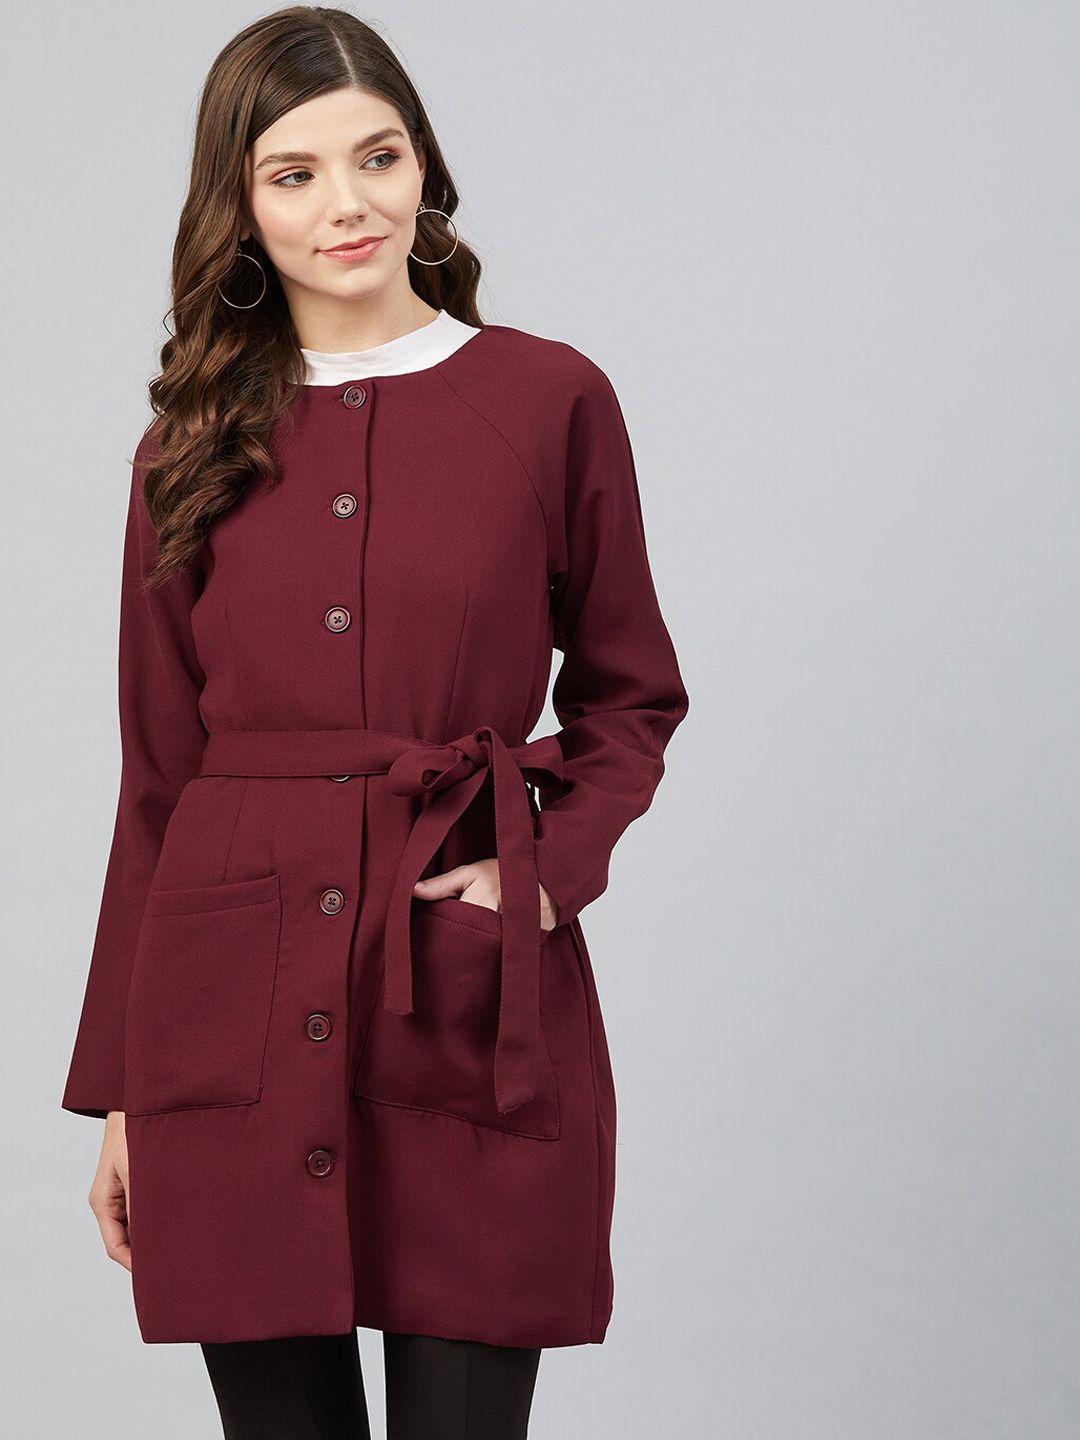 marie claire women maroon solid overcoat